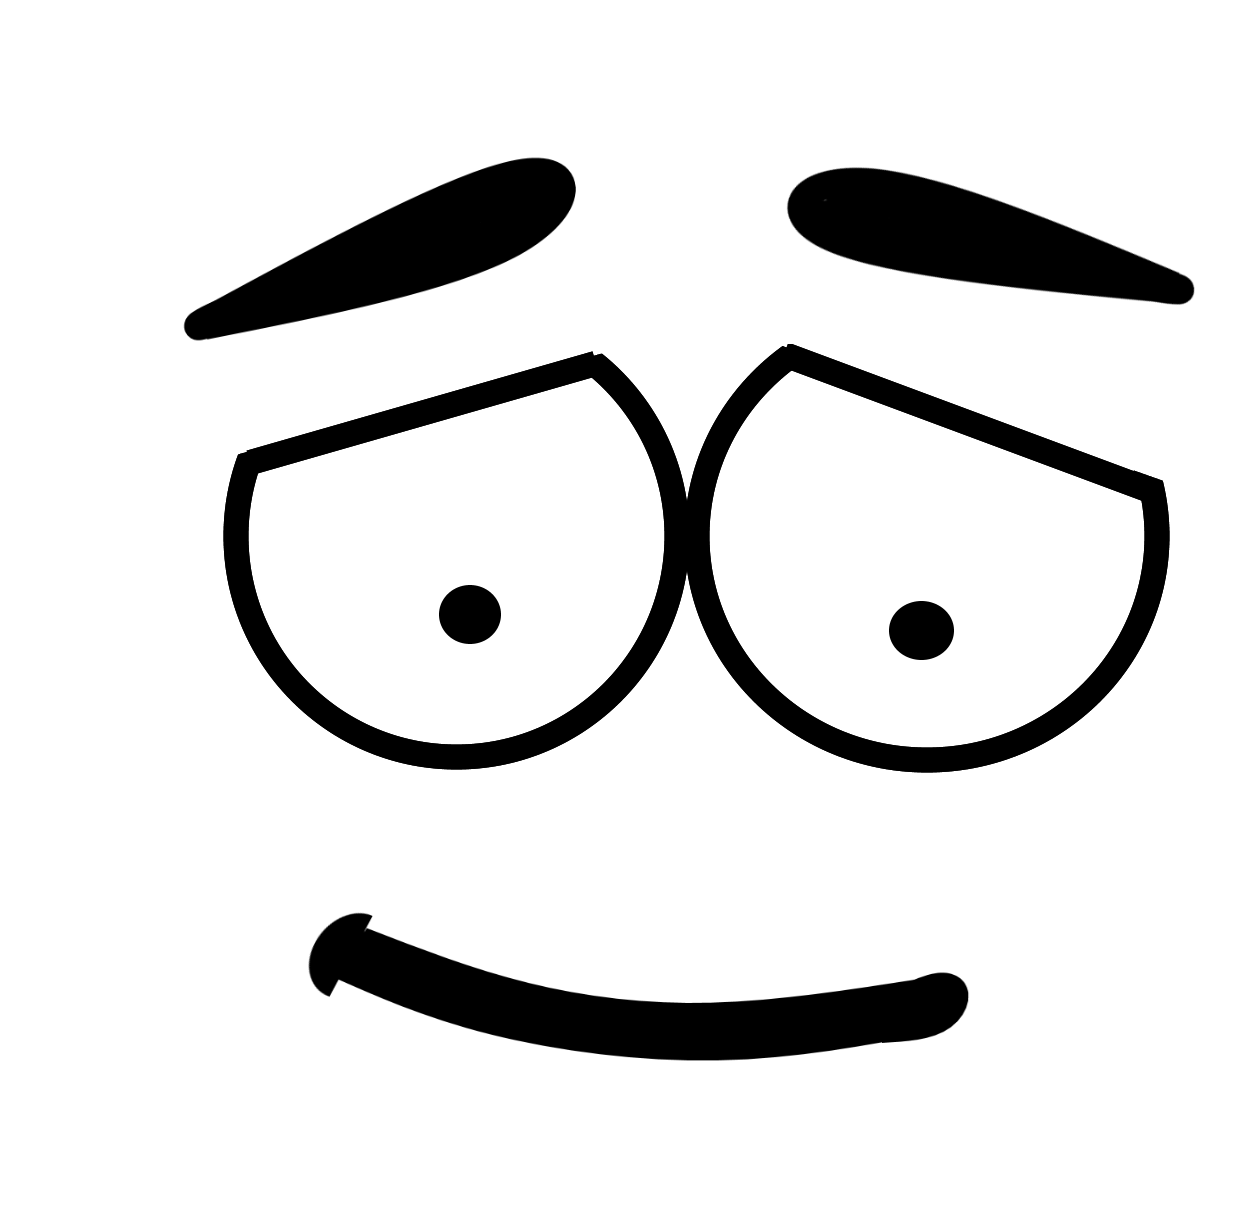 Emoji Art Outline Face HQ Image Free PNG Image